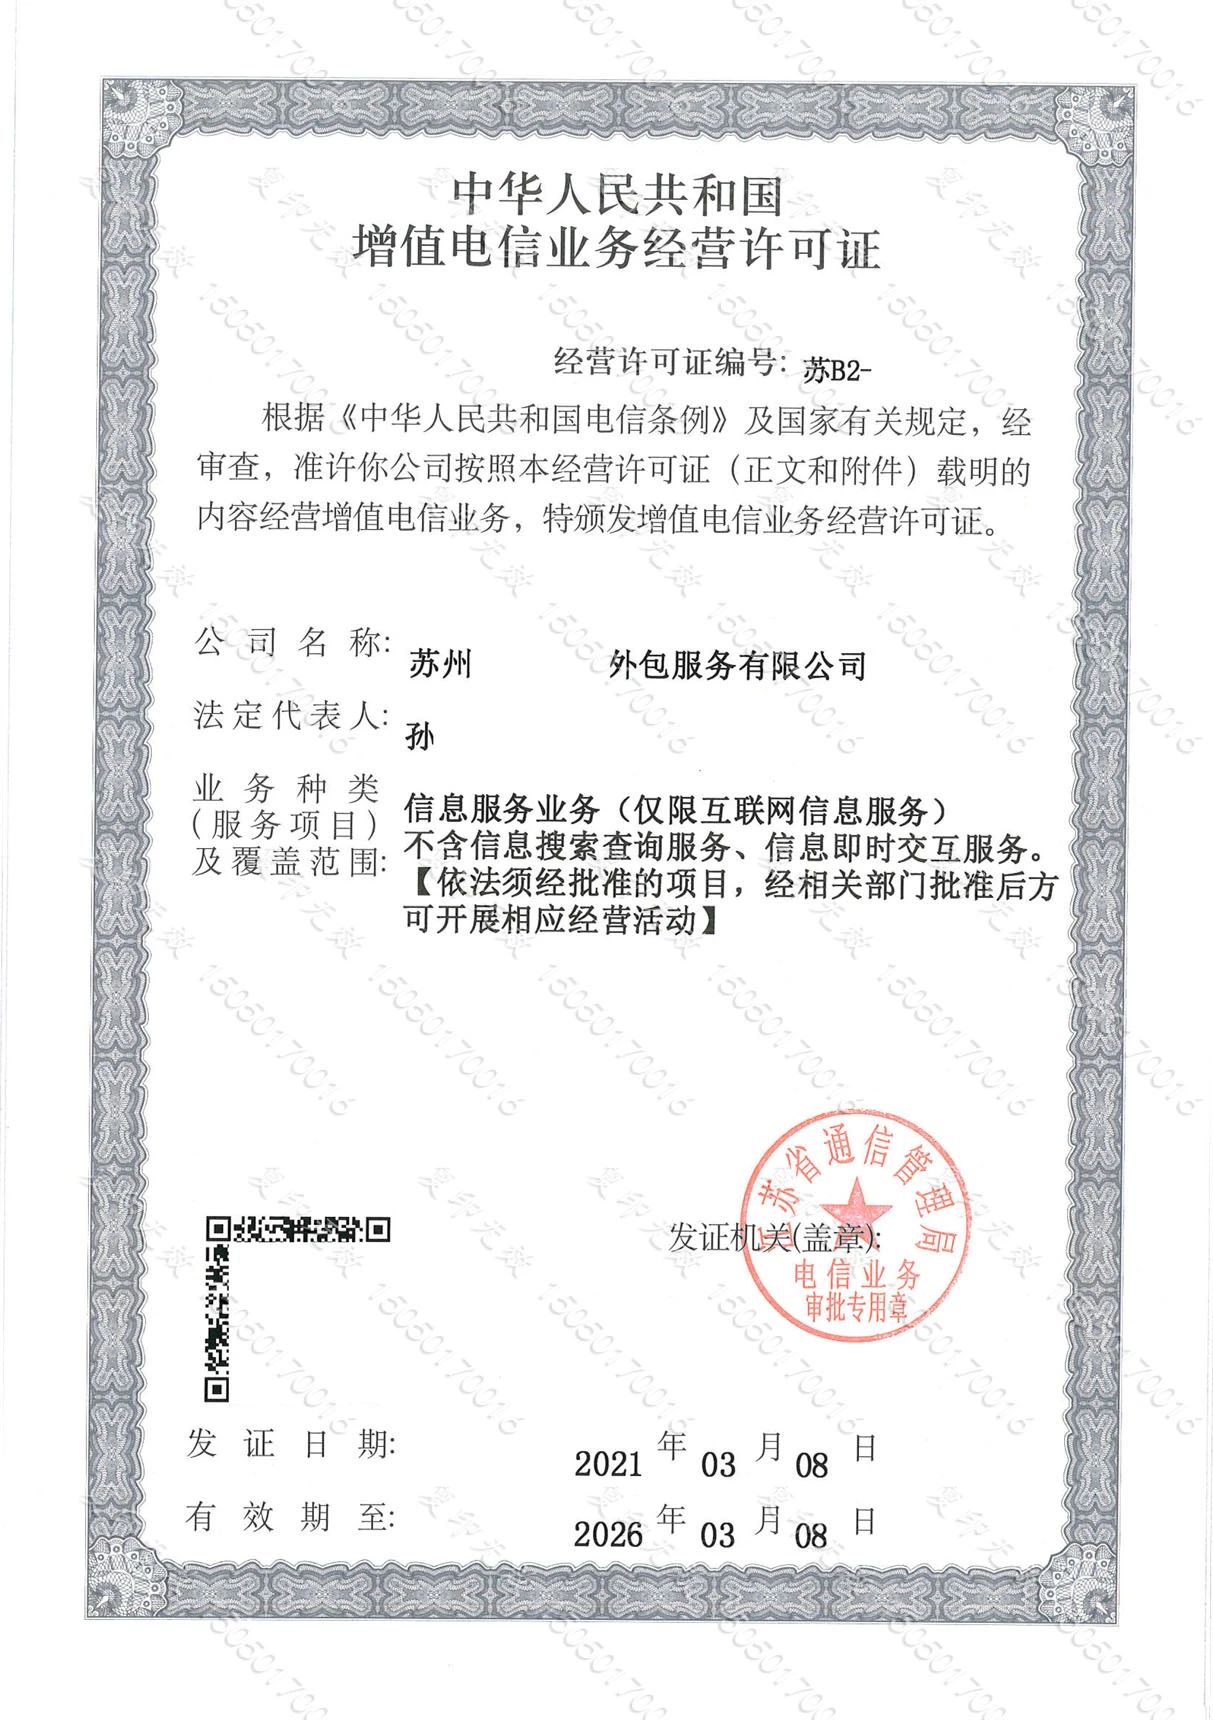 武汉辐射安全许可证申请材料清单，快来查收一下！